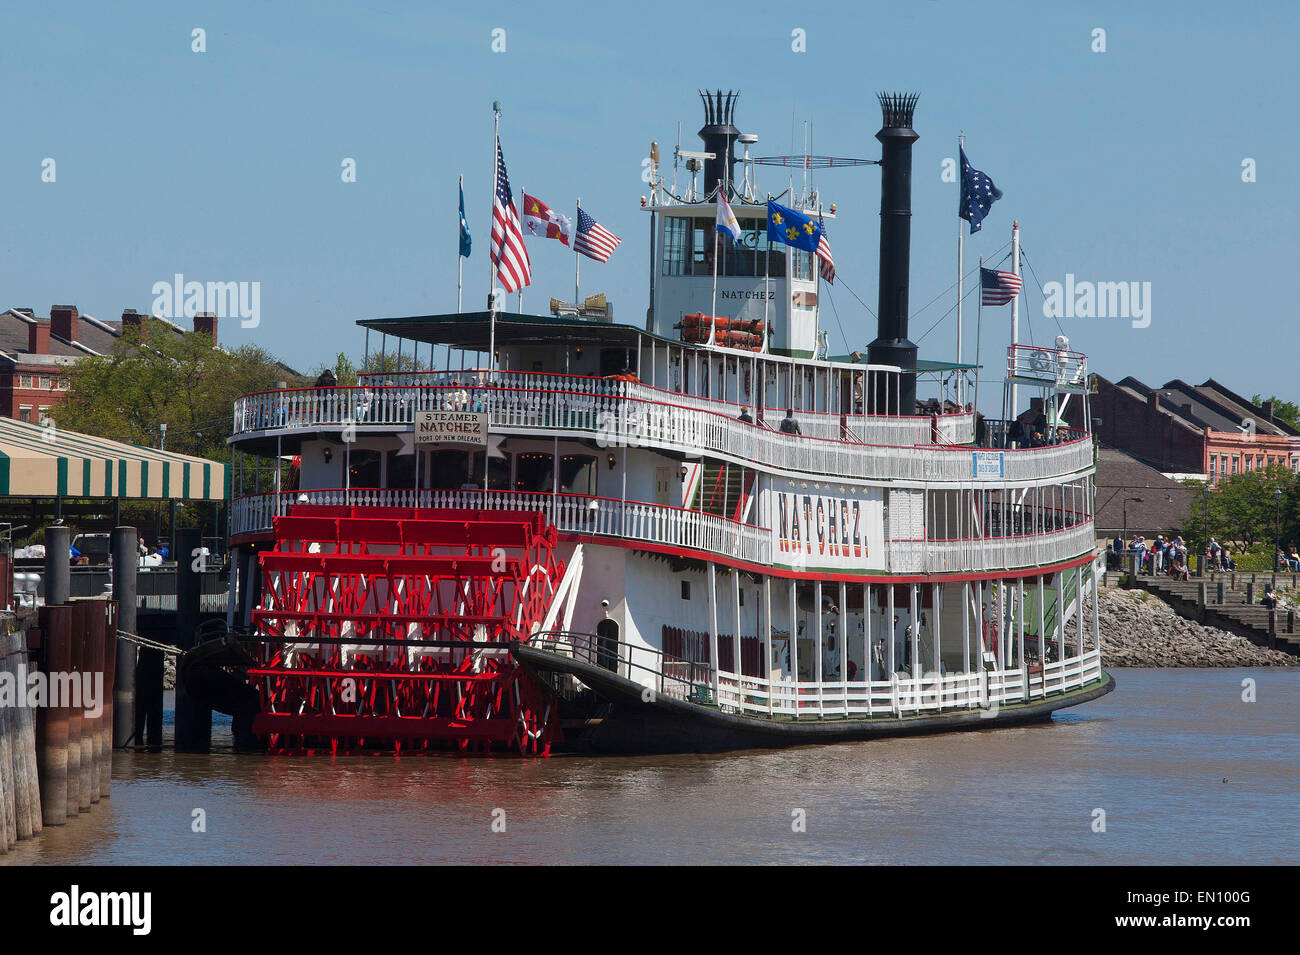 La Nouvelle Orléans, Louisiane : steamboat Natchez Banque D'Images